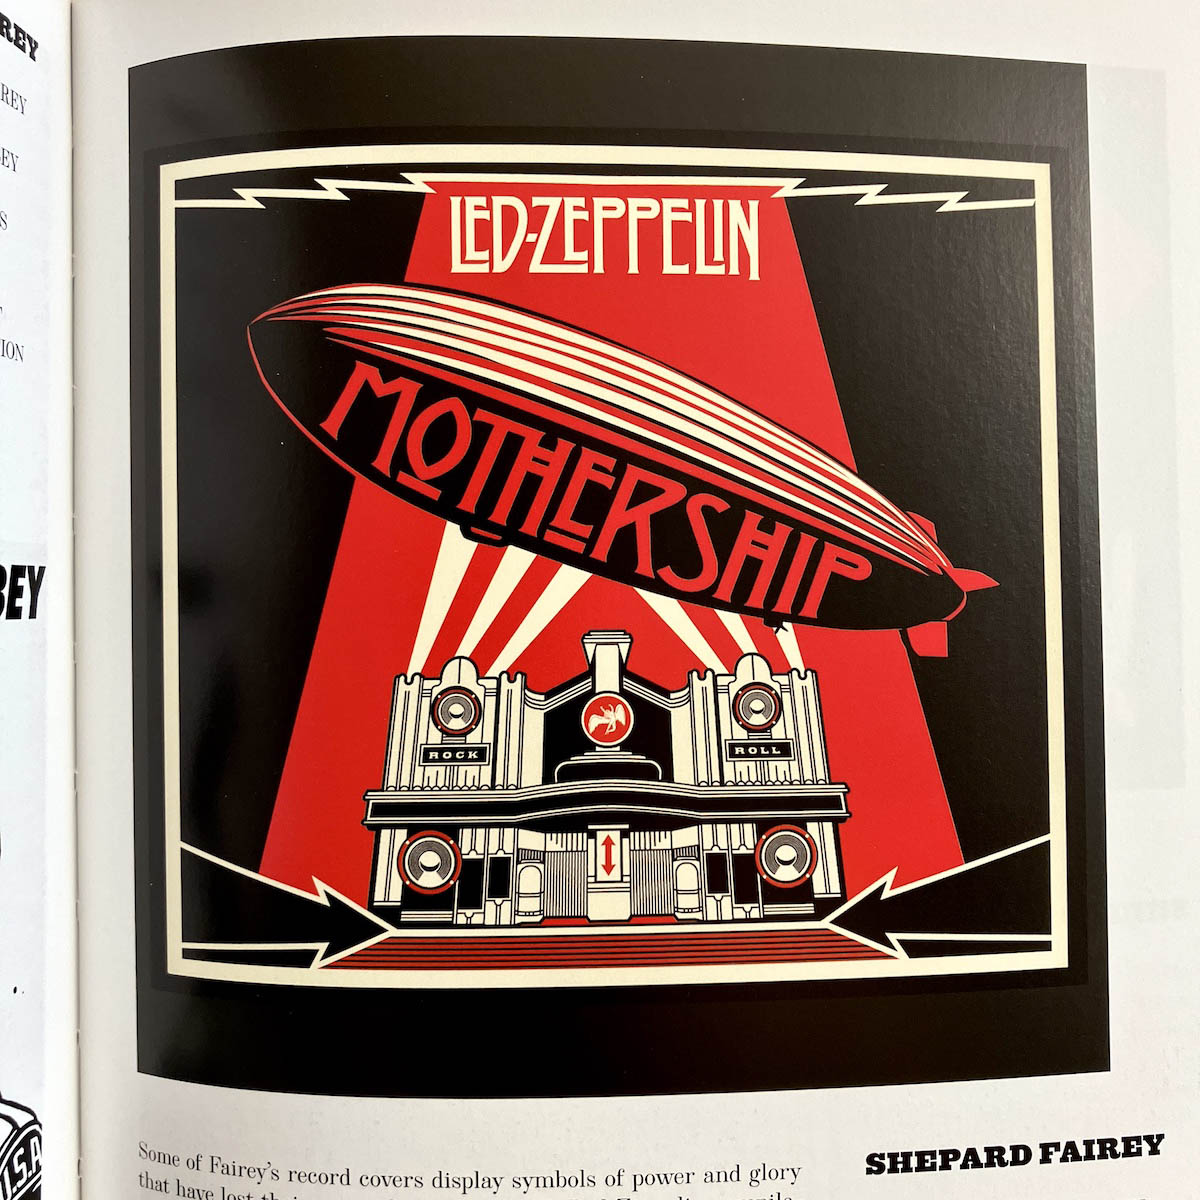 Led Zeppelin album cover pop art by Shepard Fairey | Photo By Kerwin